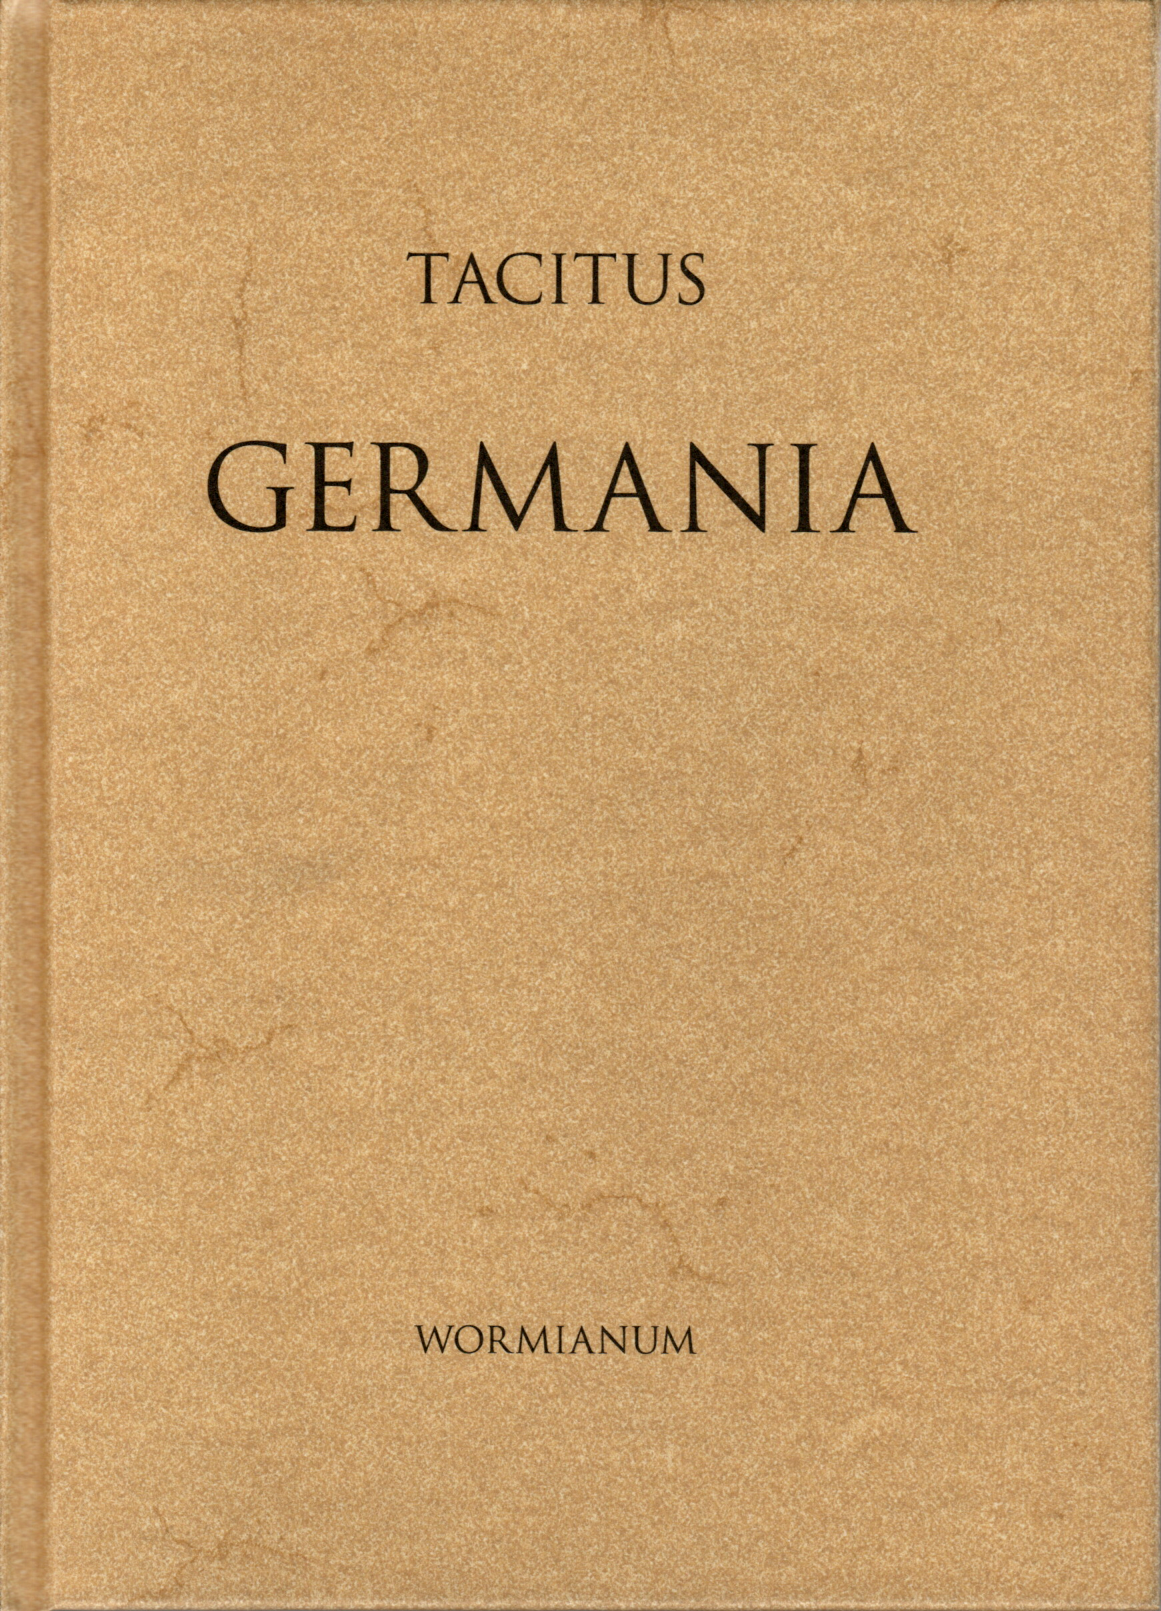 Tacitus' Germania.